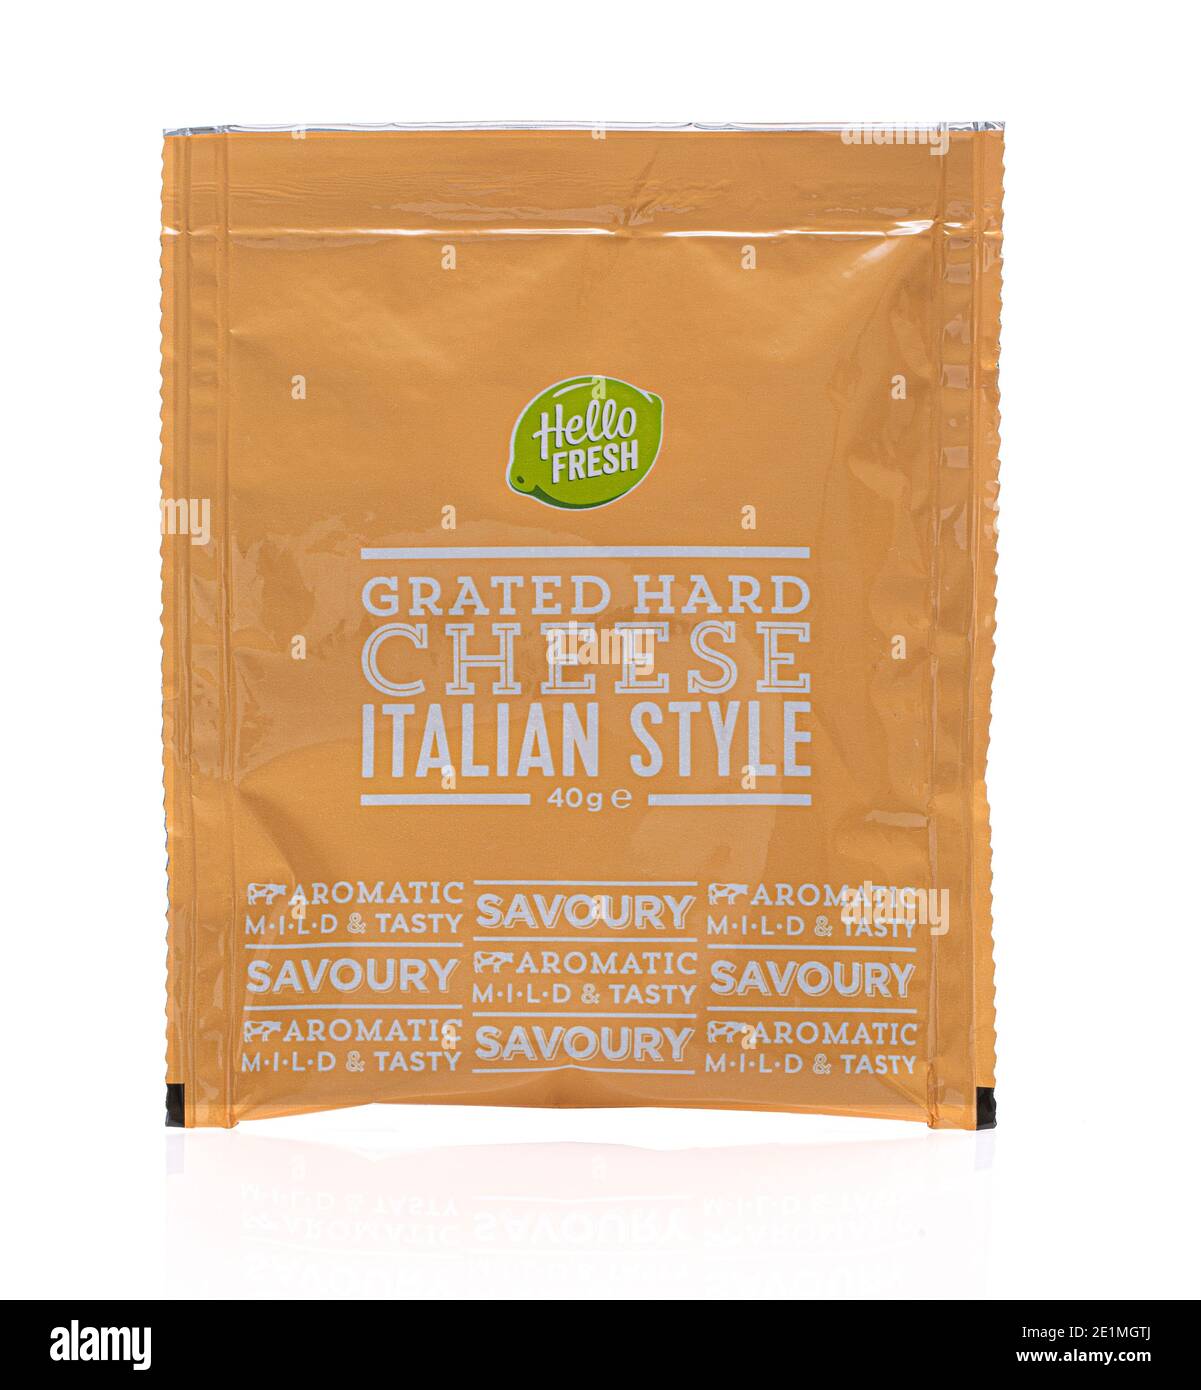 SWINDON, UK - 8. JANUAR 2021: Paket von Hallo frisch geriebenen harten italienischen Stil Käse Stockfoto